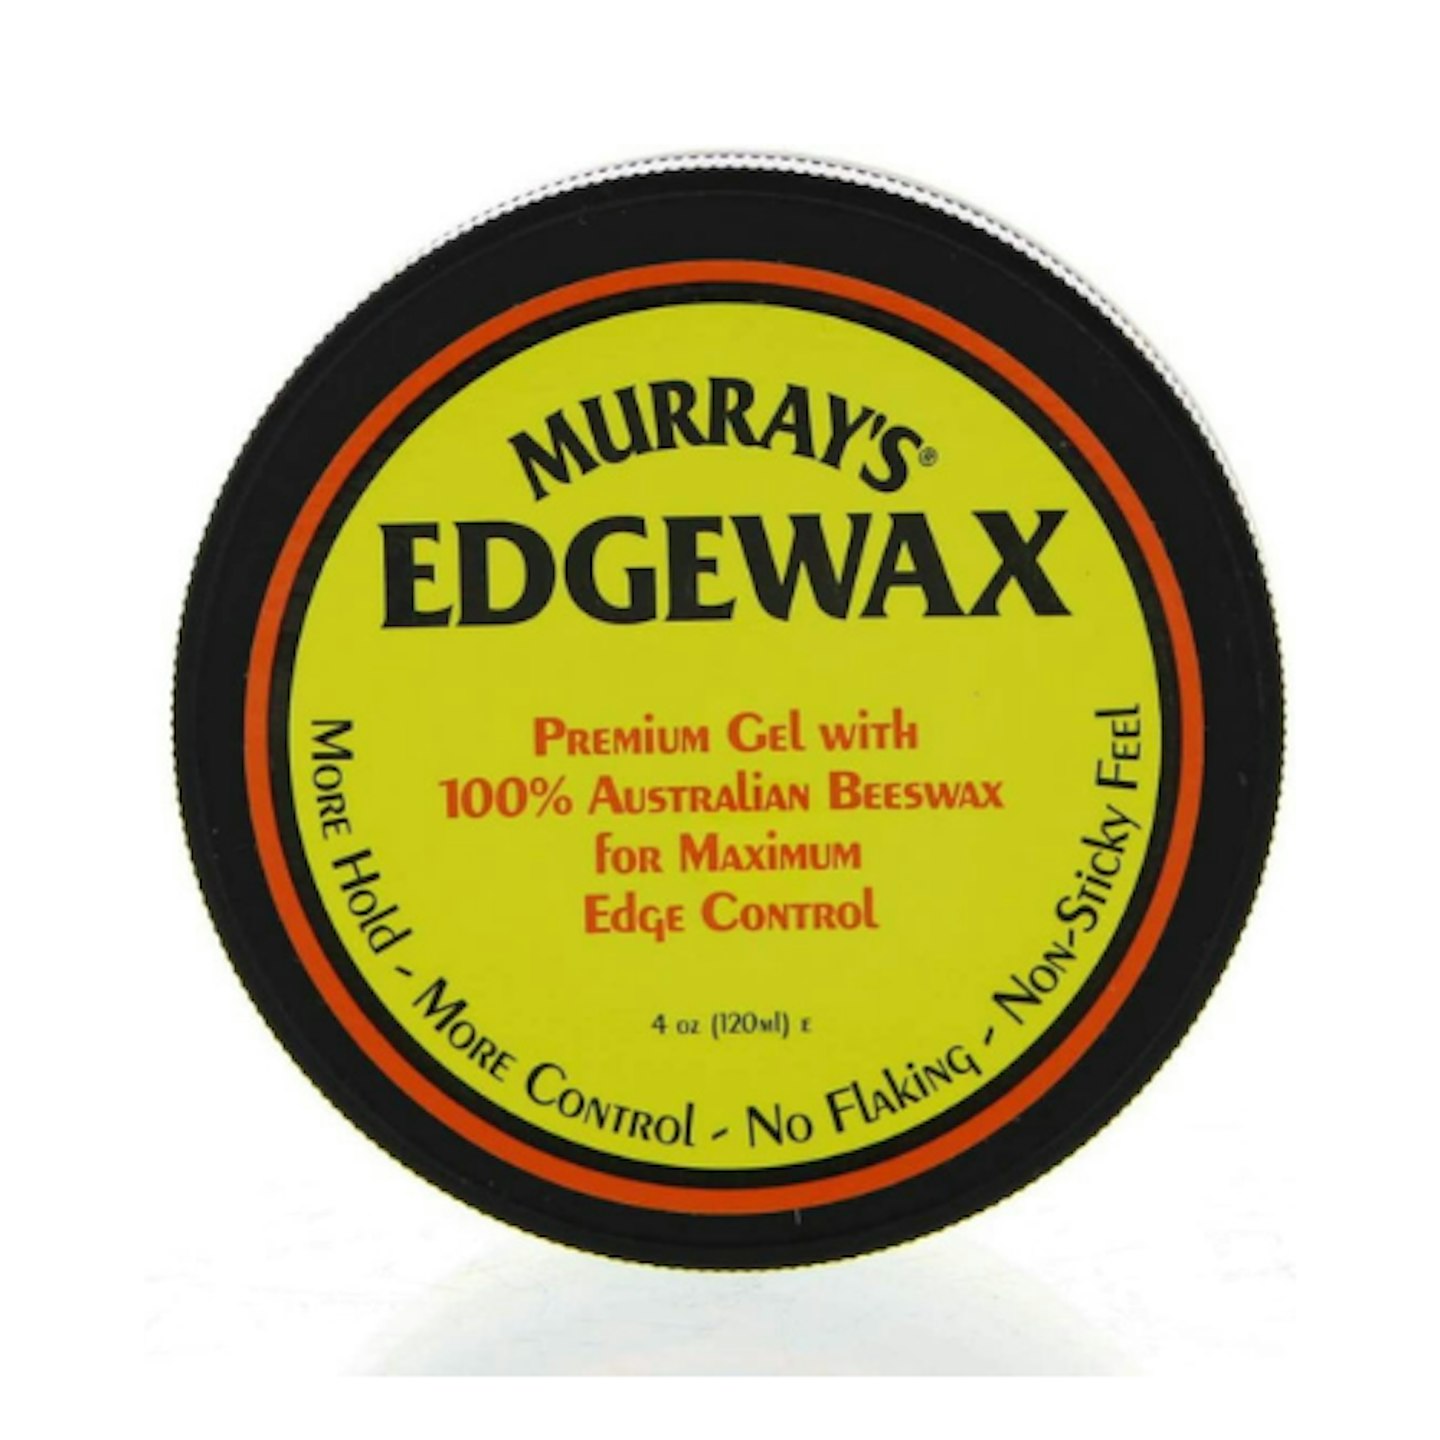 Murray's Edgewax Premium Gel on white background